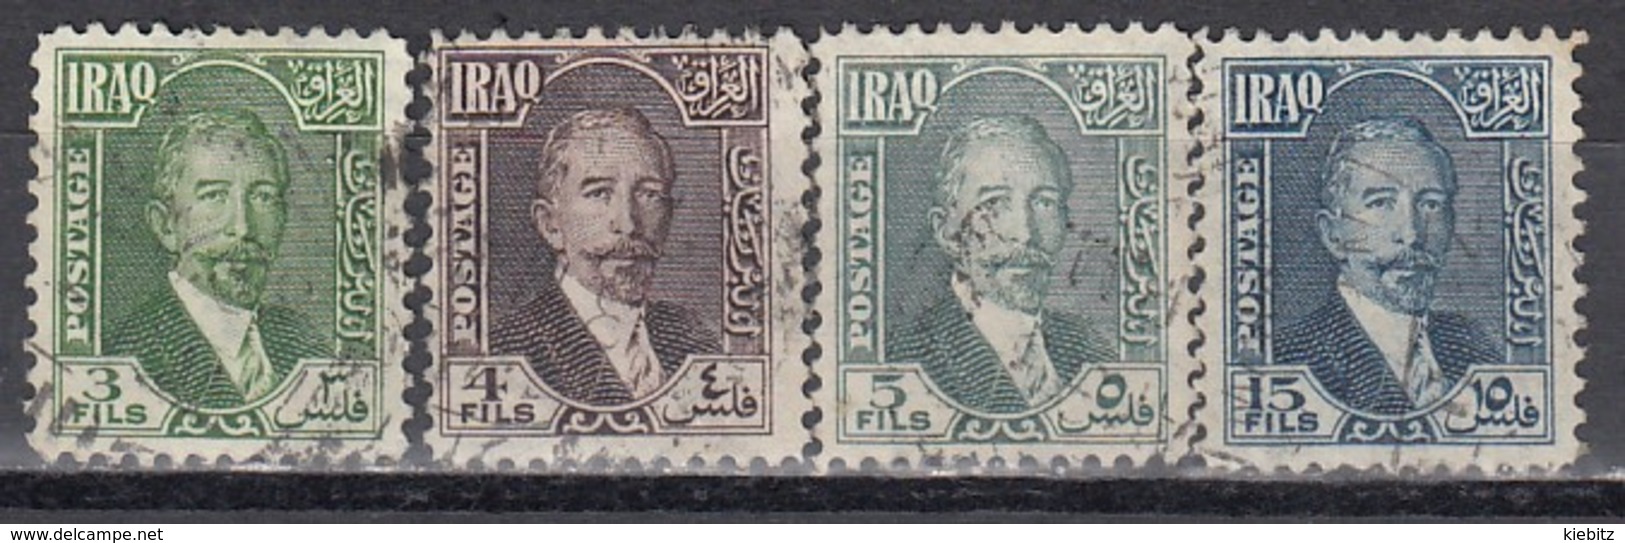 IRAK 1932 - MiNr: 62 - 78 Lot 4x   Used - Iraq